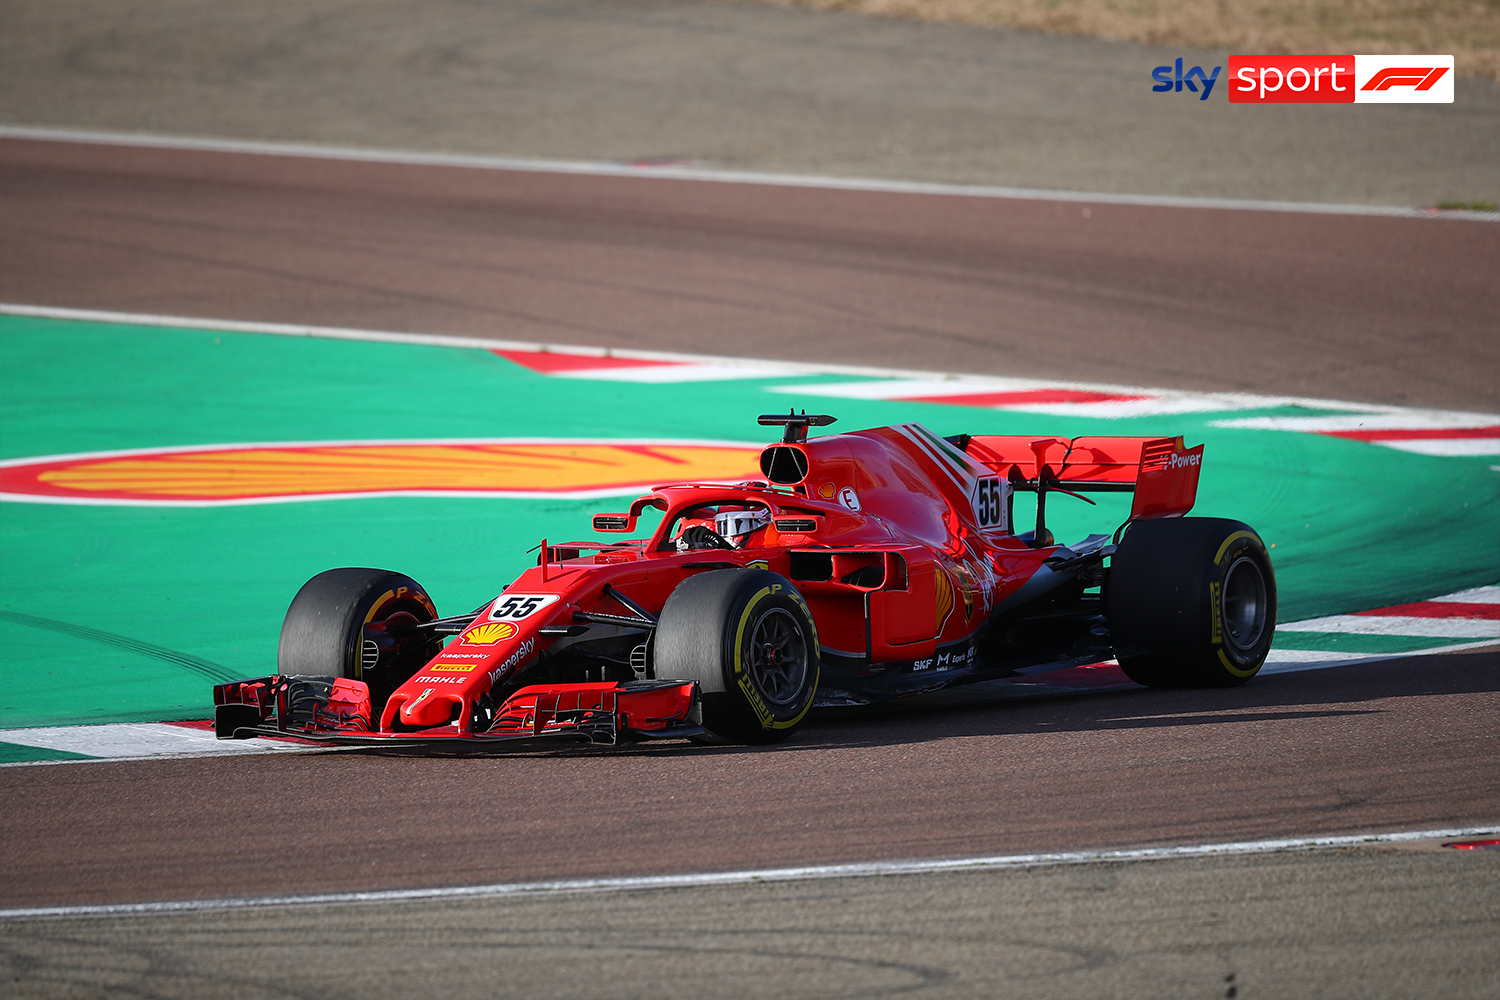 First photos of Carlos Sainz driving a Ferrari F1 car